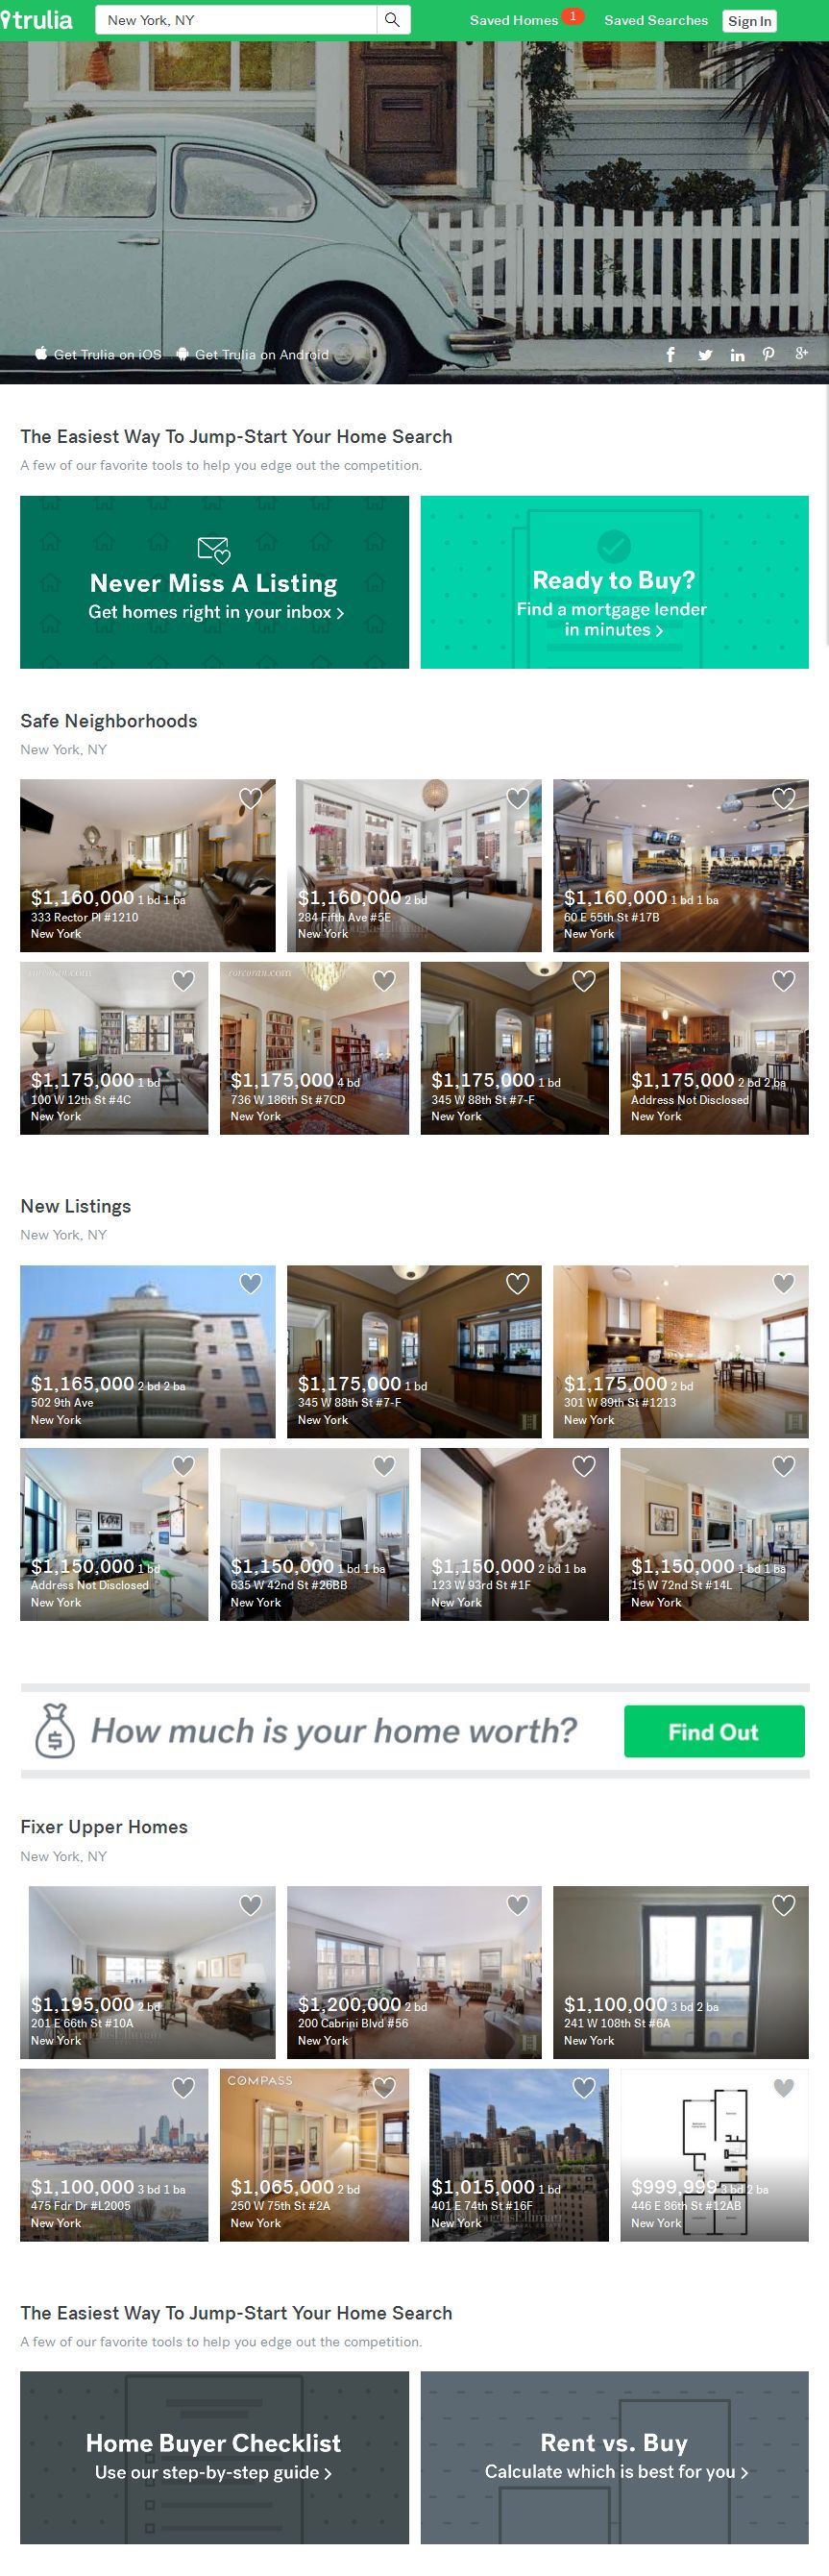 Tham khảo những tính năng cho thiết kế website bất động sản 2